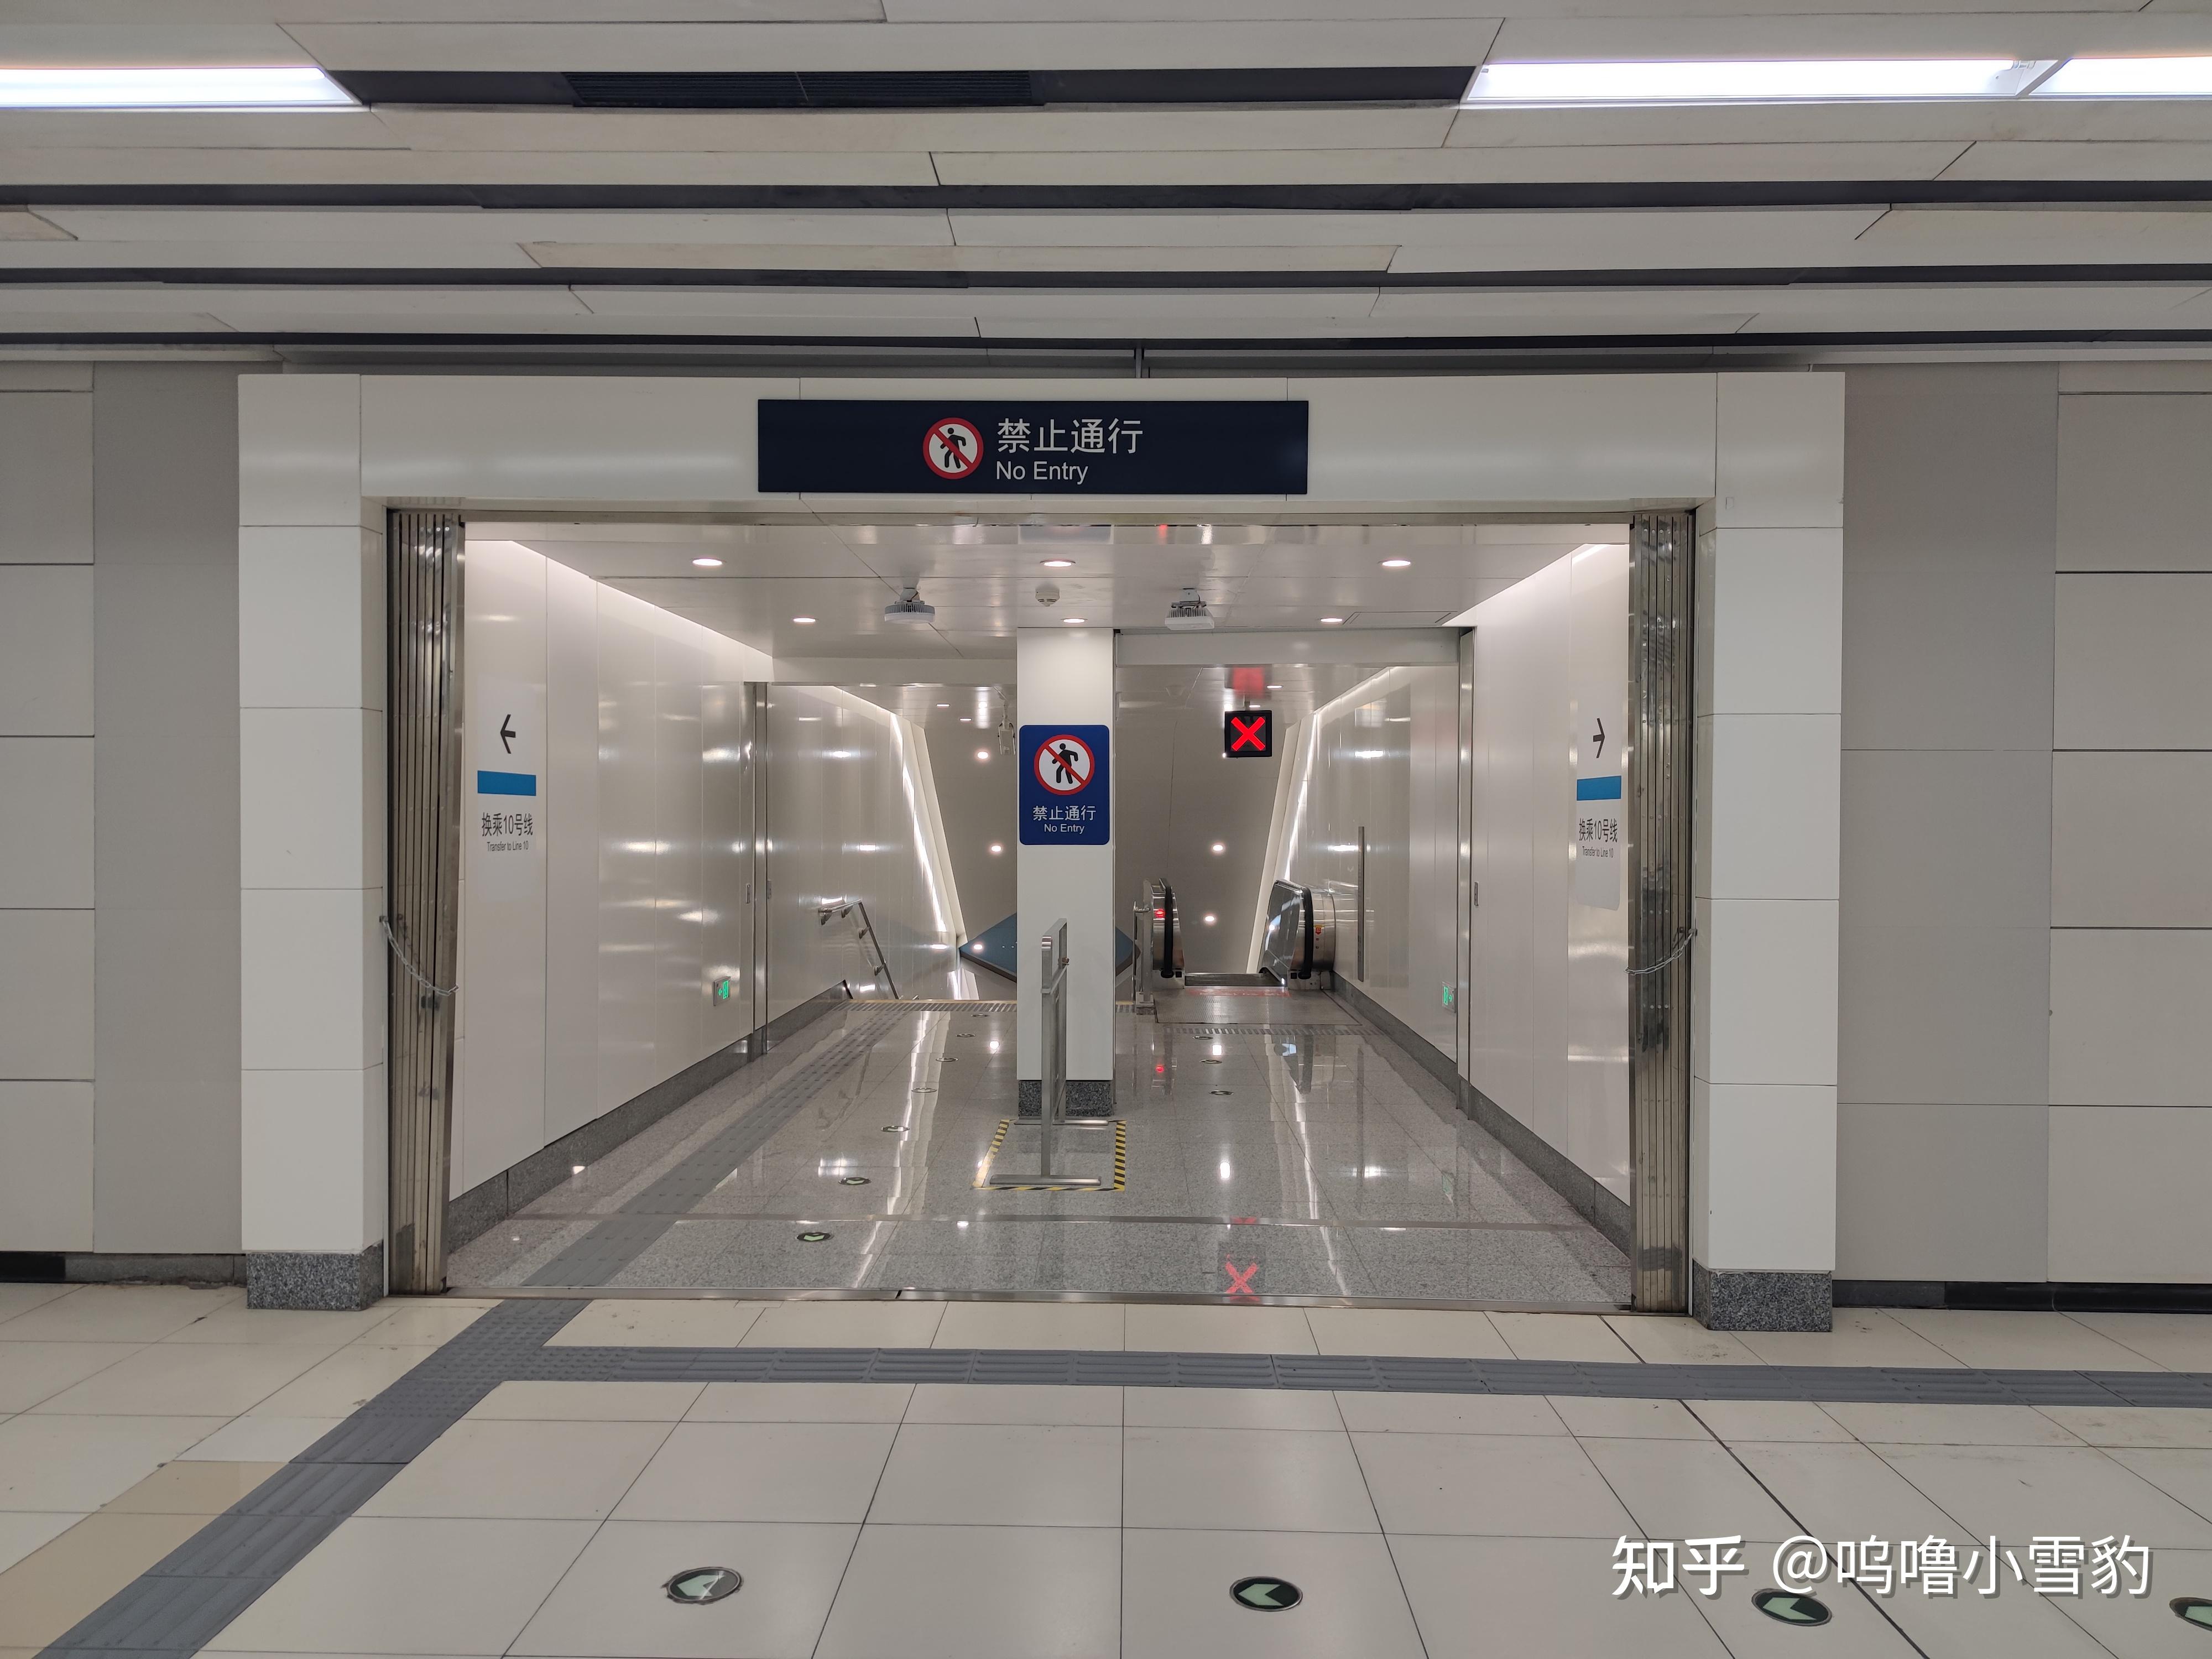 北京地铁19号线运转实录——牡丹园站、车内布景、草桥站 - 知乎